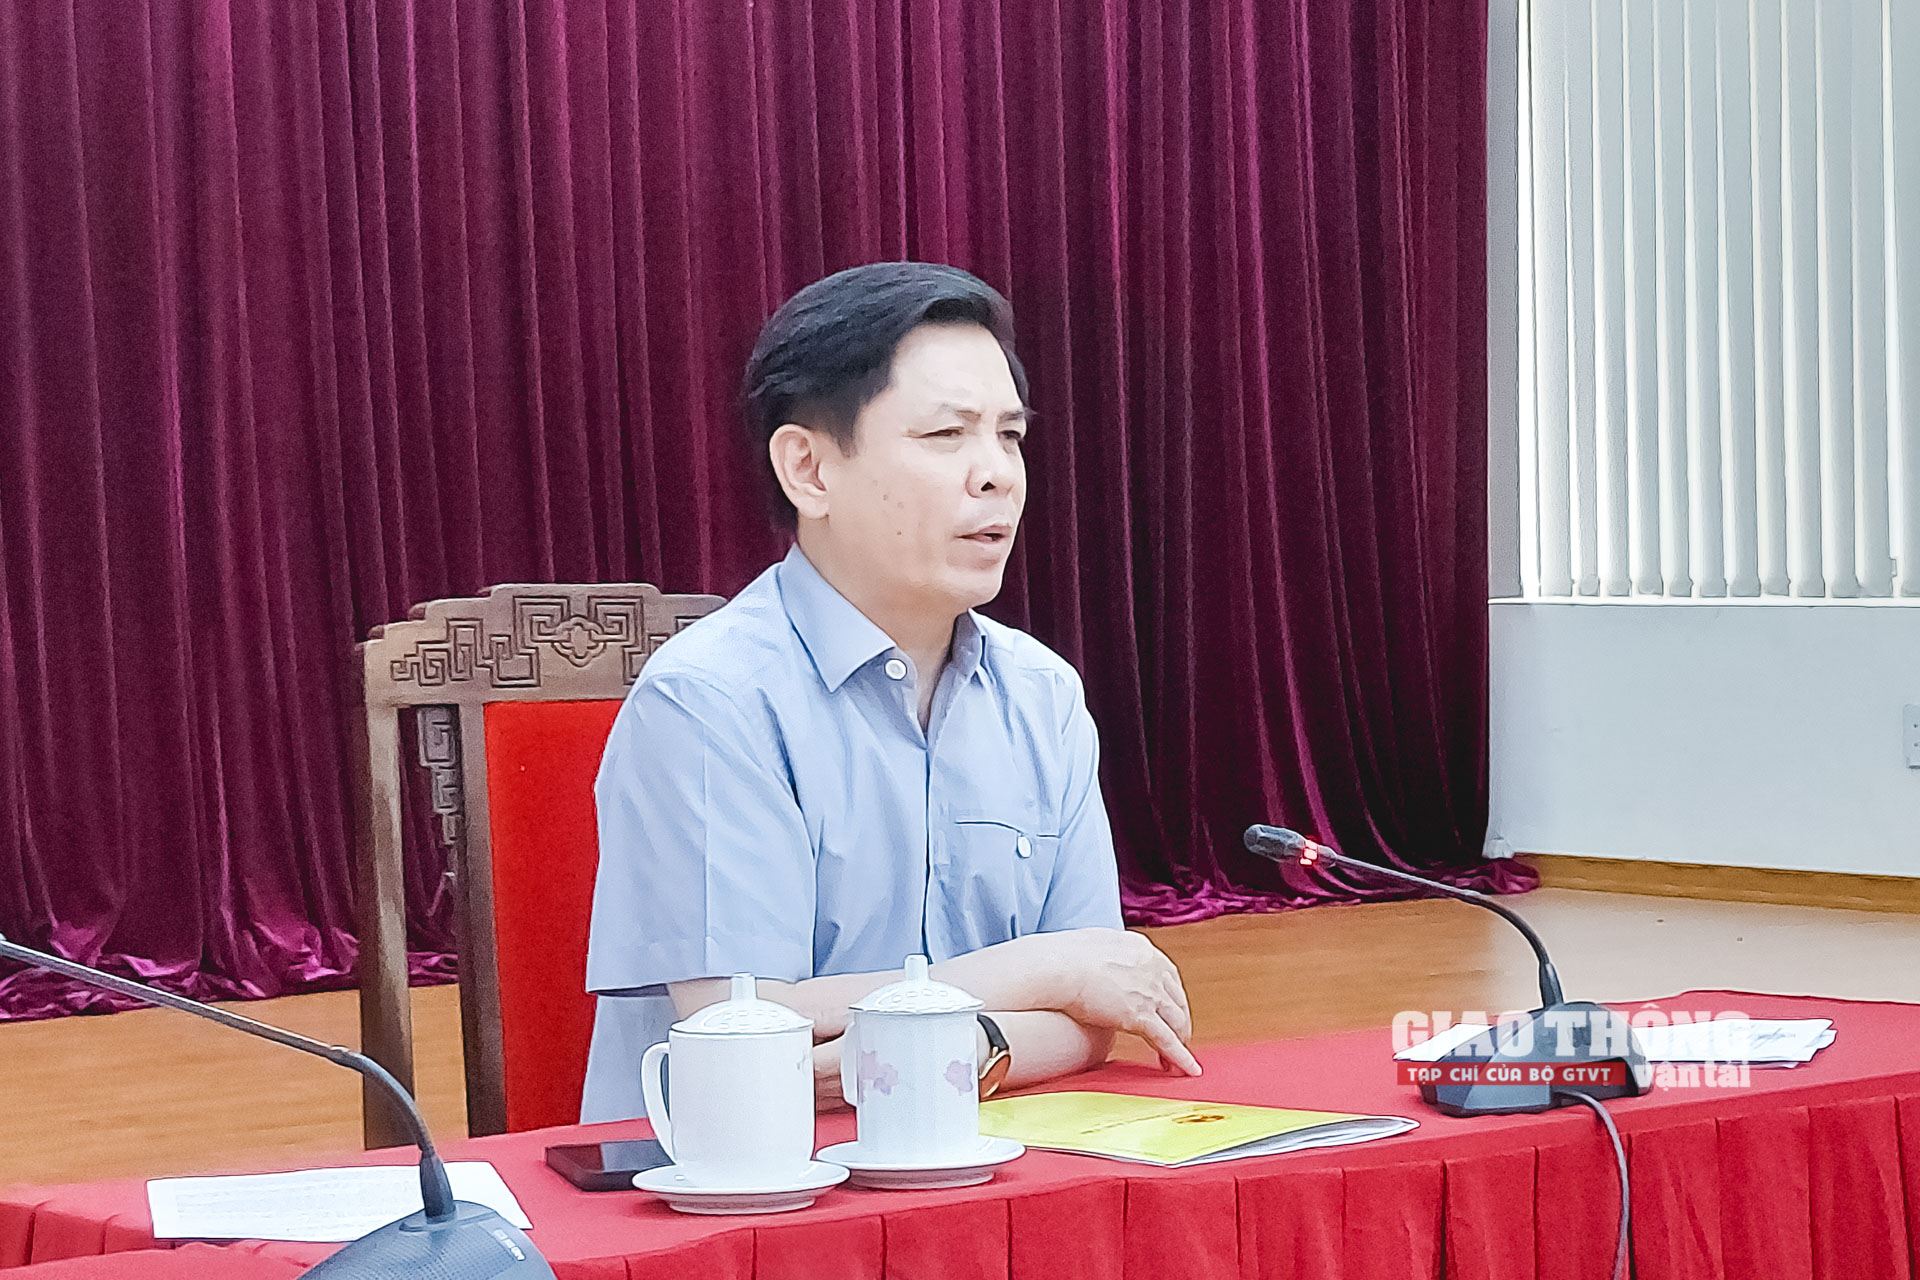 Bộ trưởng Nguyễn Văn Thể yêu cầu nỗ lực tối đa để hoàn thành công tác thiết kế kỹ thuật, dự toán và các thủ tục liên quan để khởi công toàn bộ dự án cao tốc Bắc - Nam giai đoạn 2 trước 31/12/2022